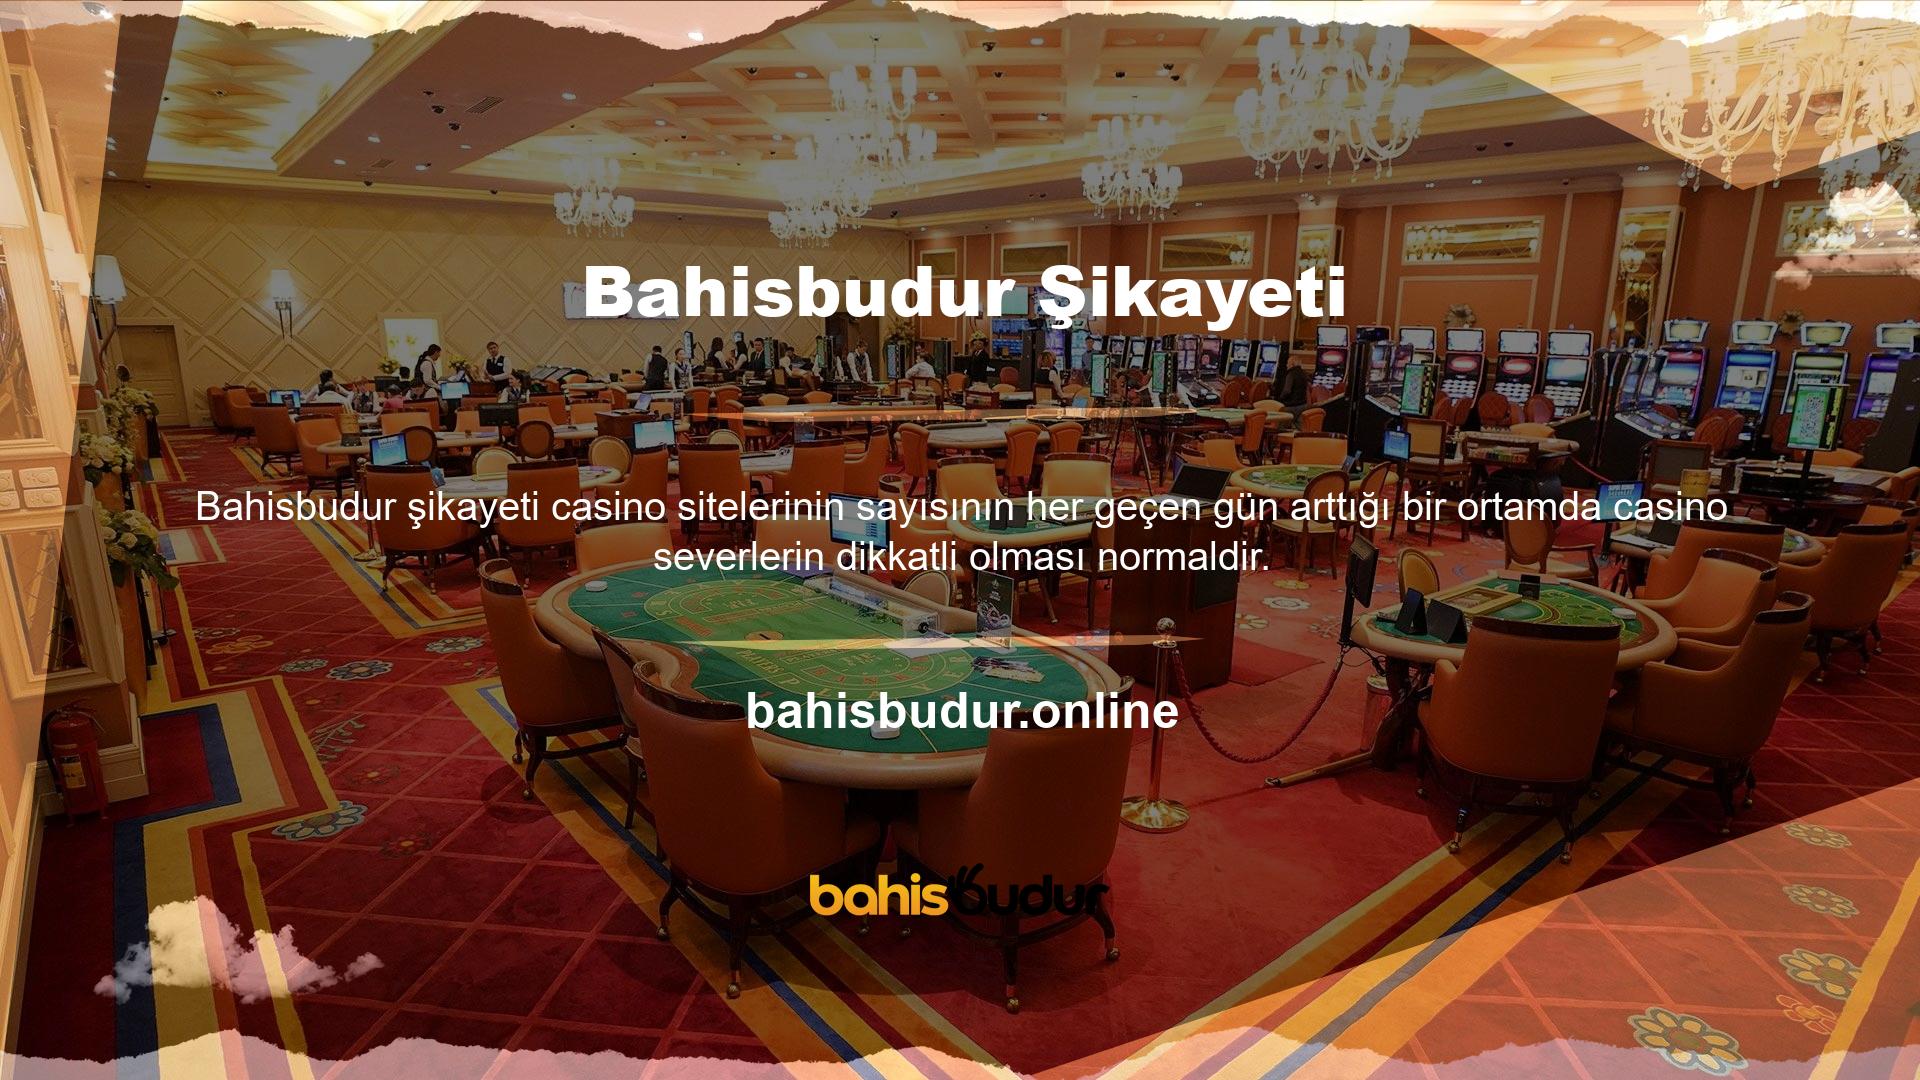 Bahisbudur canlı bahis sitesinin güvenilir olup olmadığı site kullanıcıları ve ziyaretçileri için doğal bir sorudur